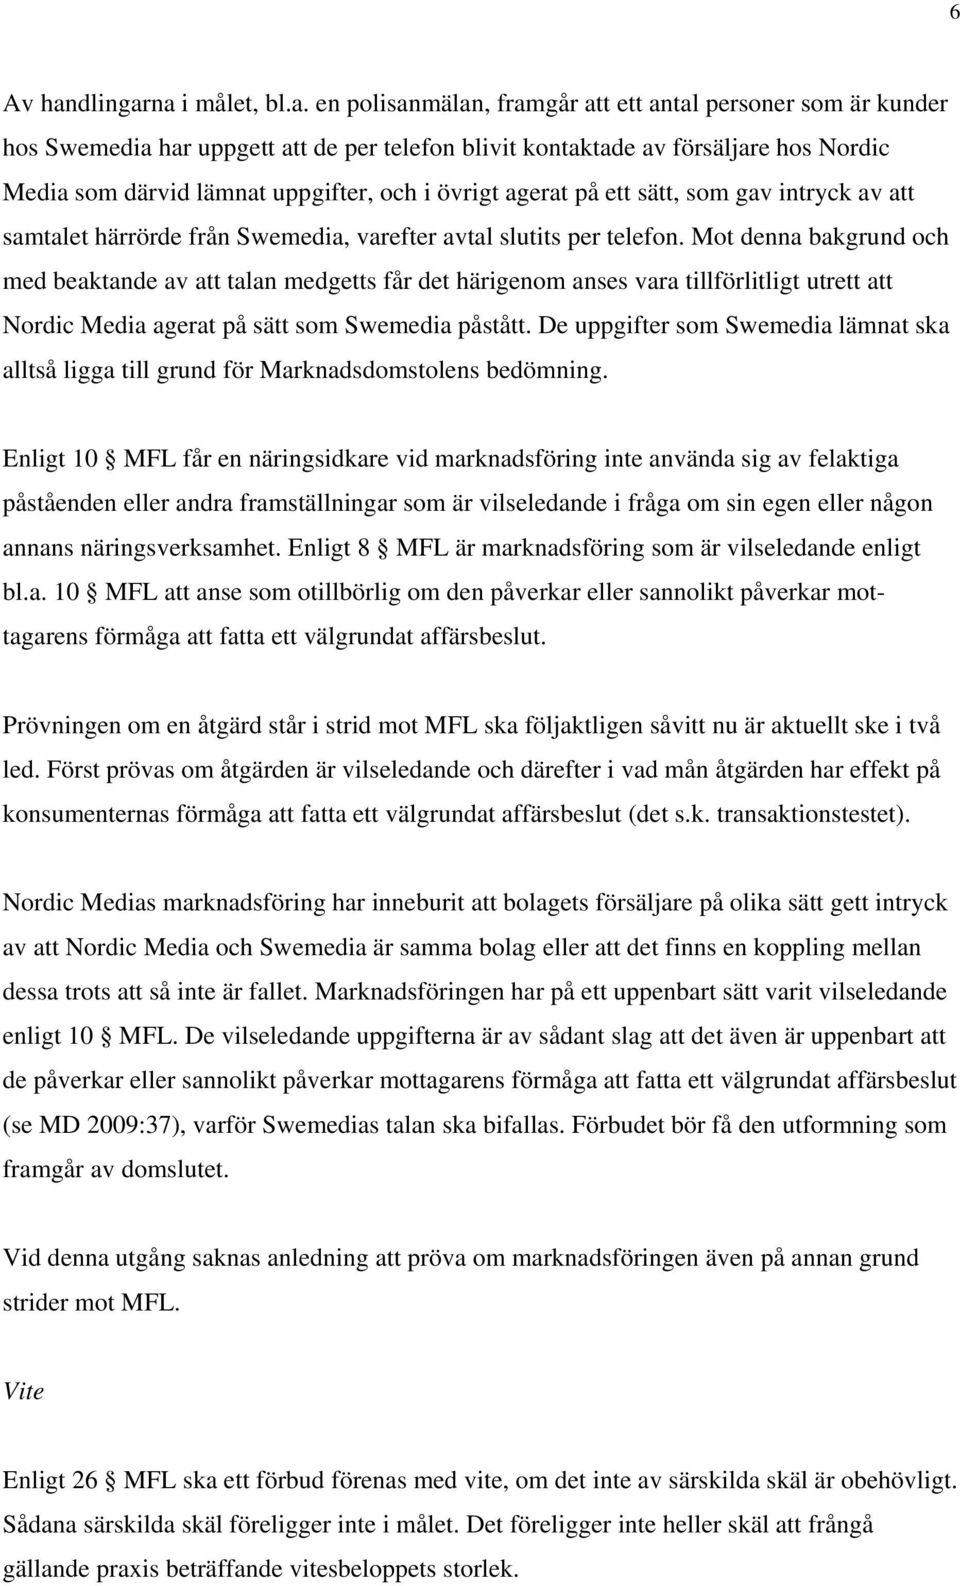 na i målet, bl.a. en polisanmälan, framgår att ett antal personer som är kunder hos Swemedia har uppgett att de per telefon blivit kontaktade av försäljare hos Nordic Media som därvid lämnat